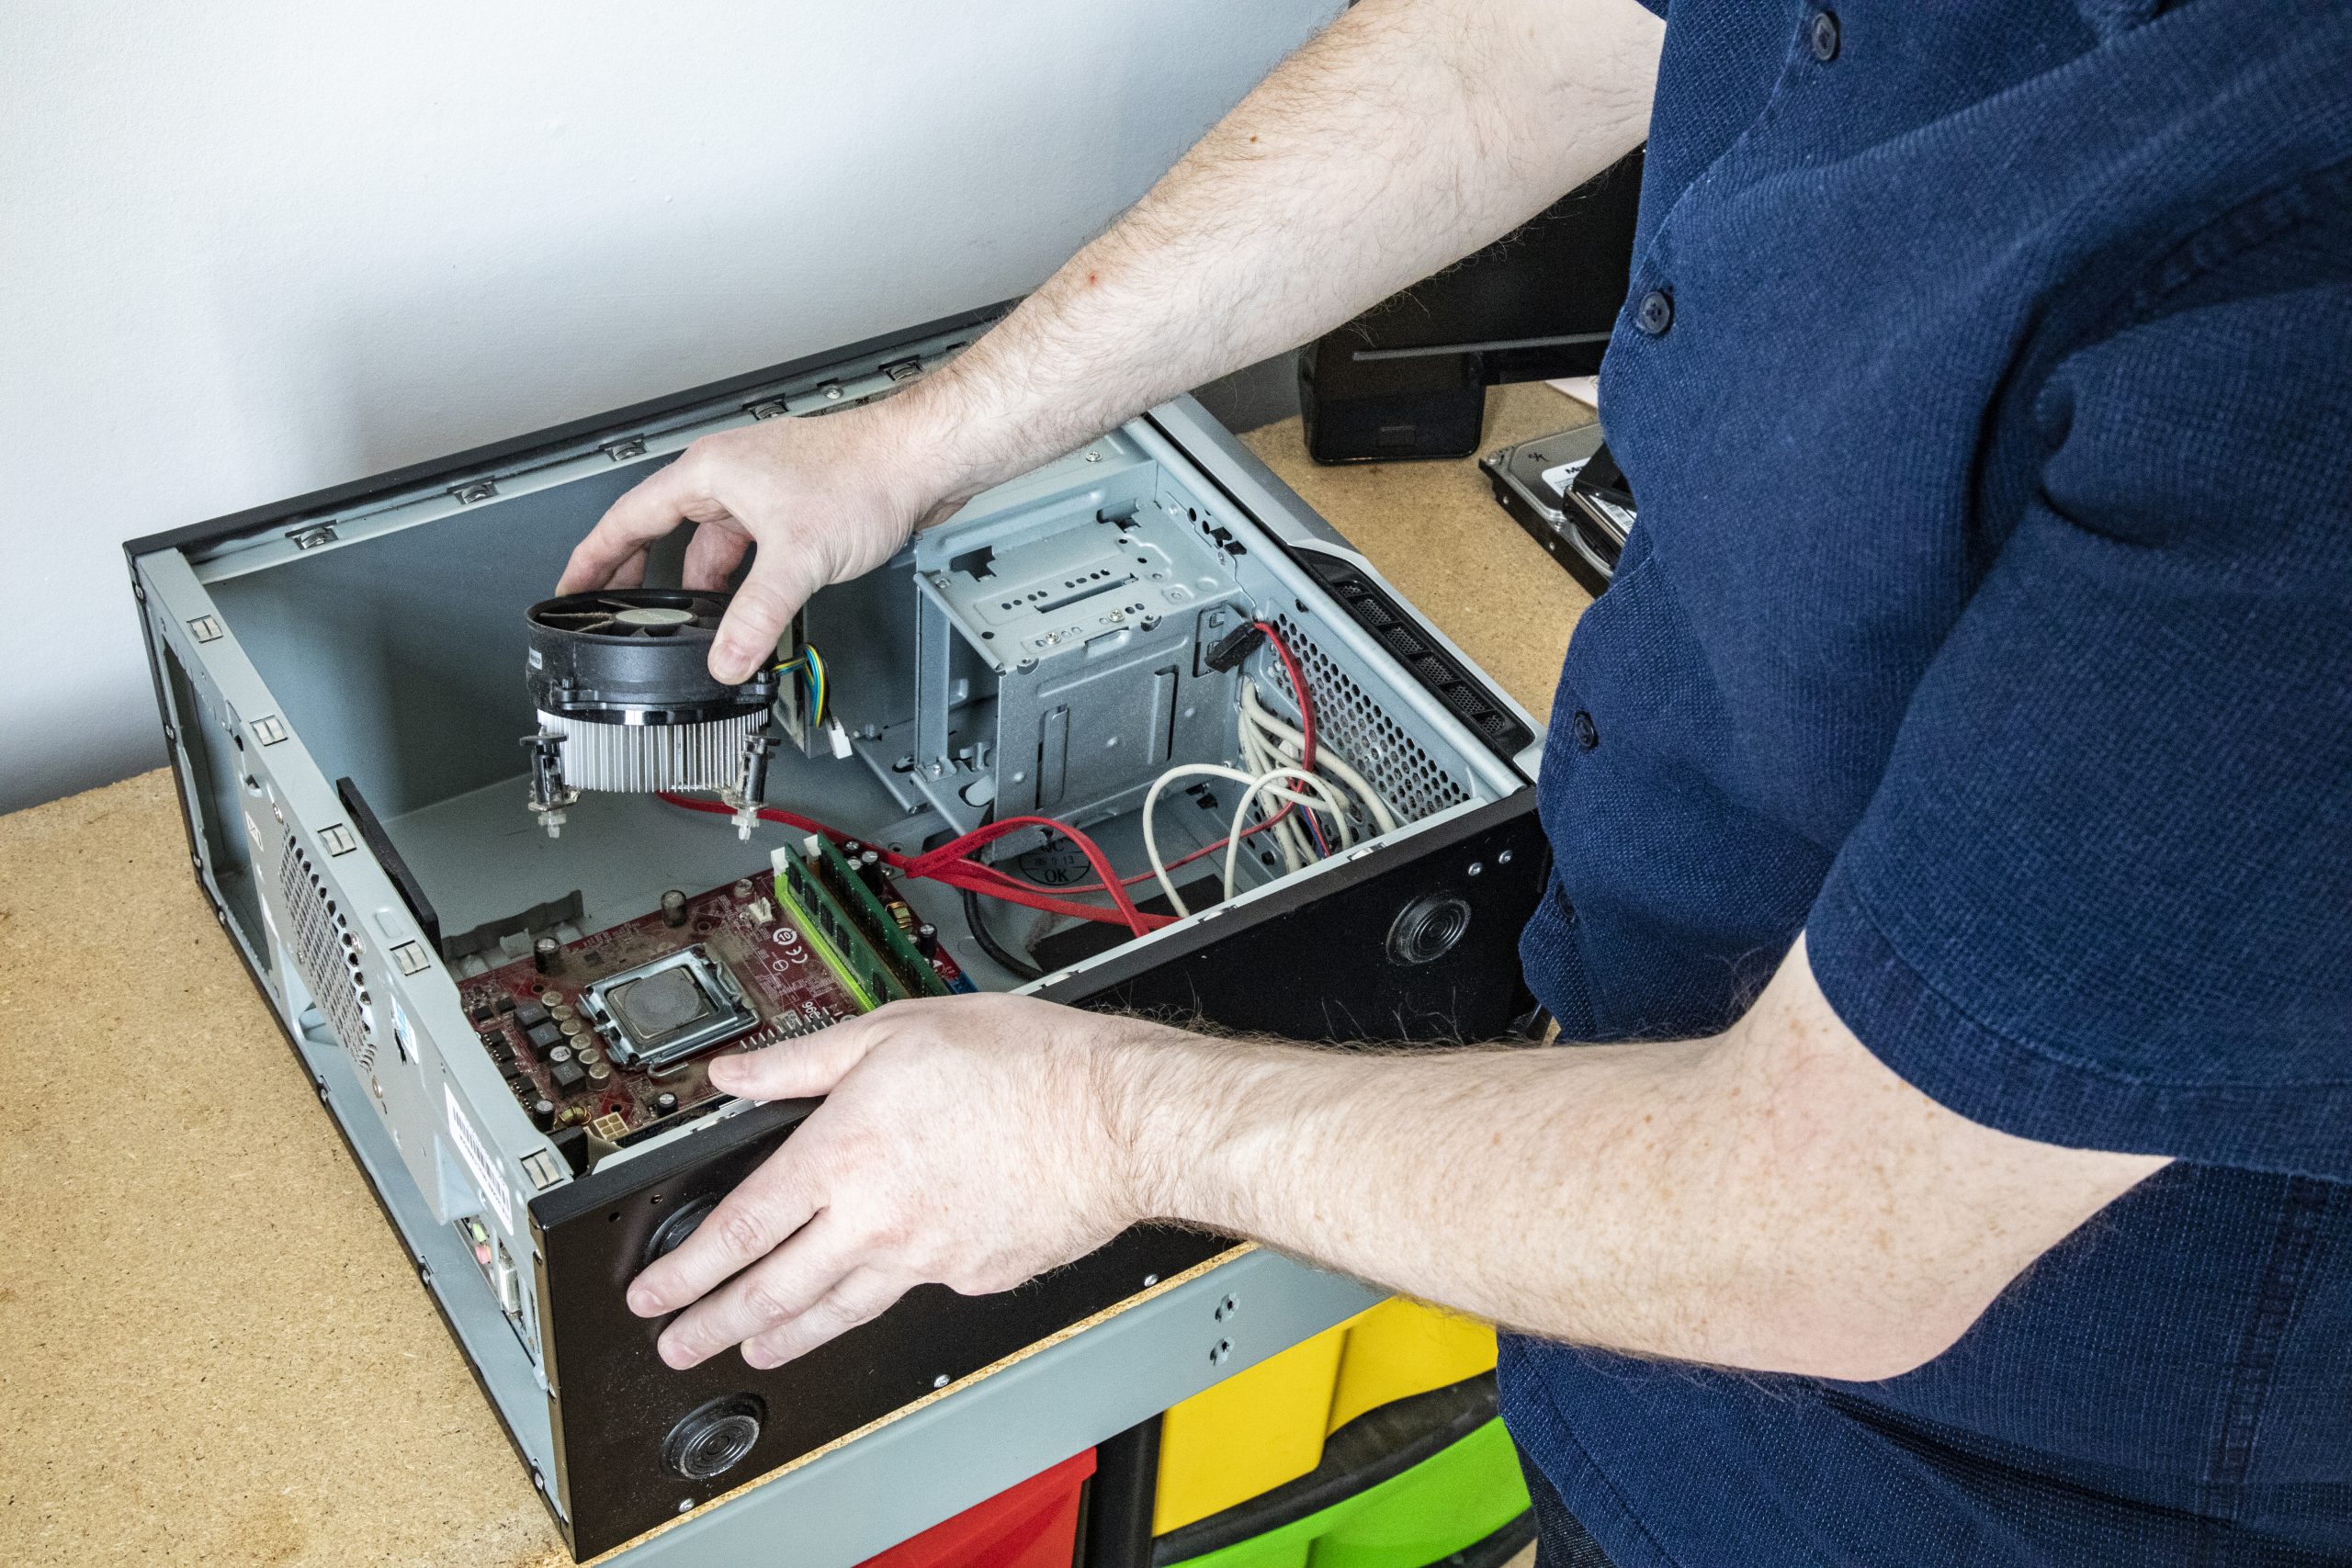 Hardware Maintenance and repair